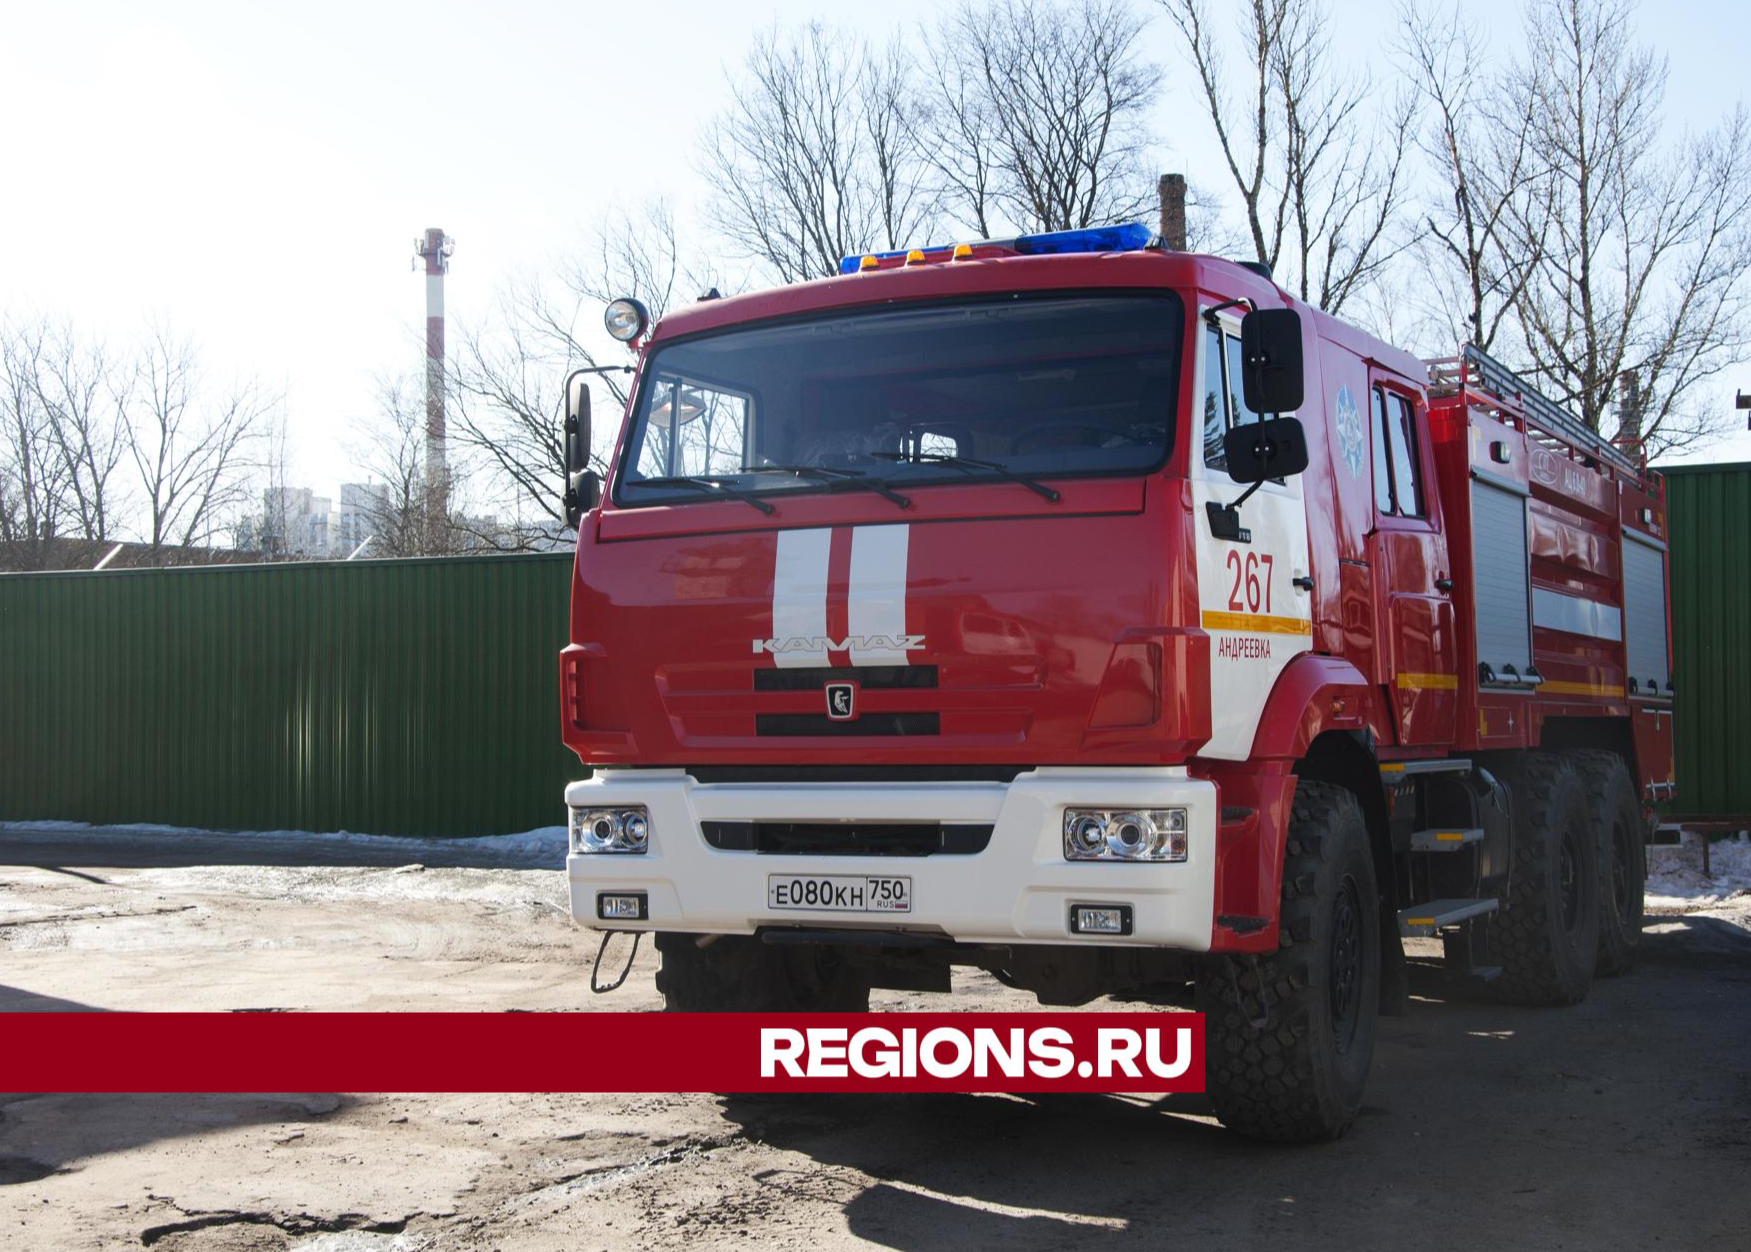 Огнеборцы спасли 14 человек из горящего дома в Солнечногорске